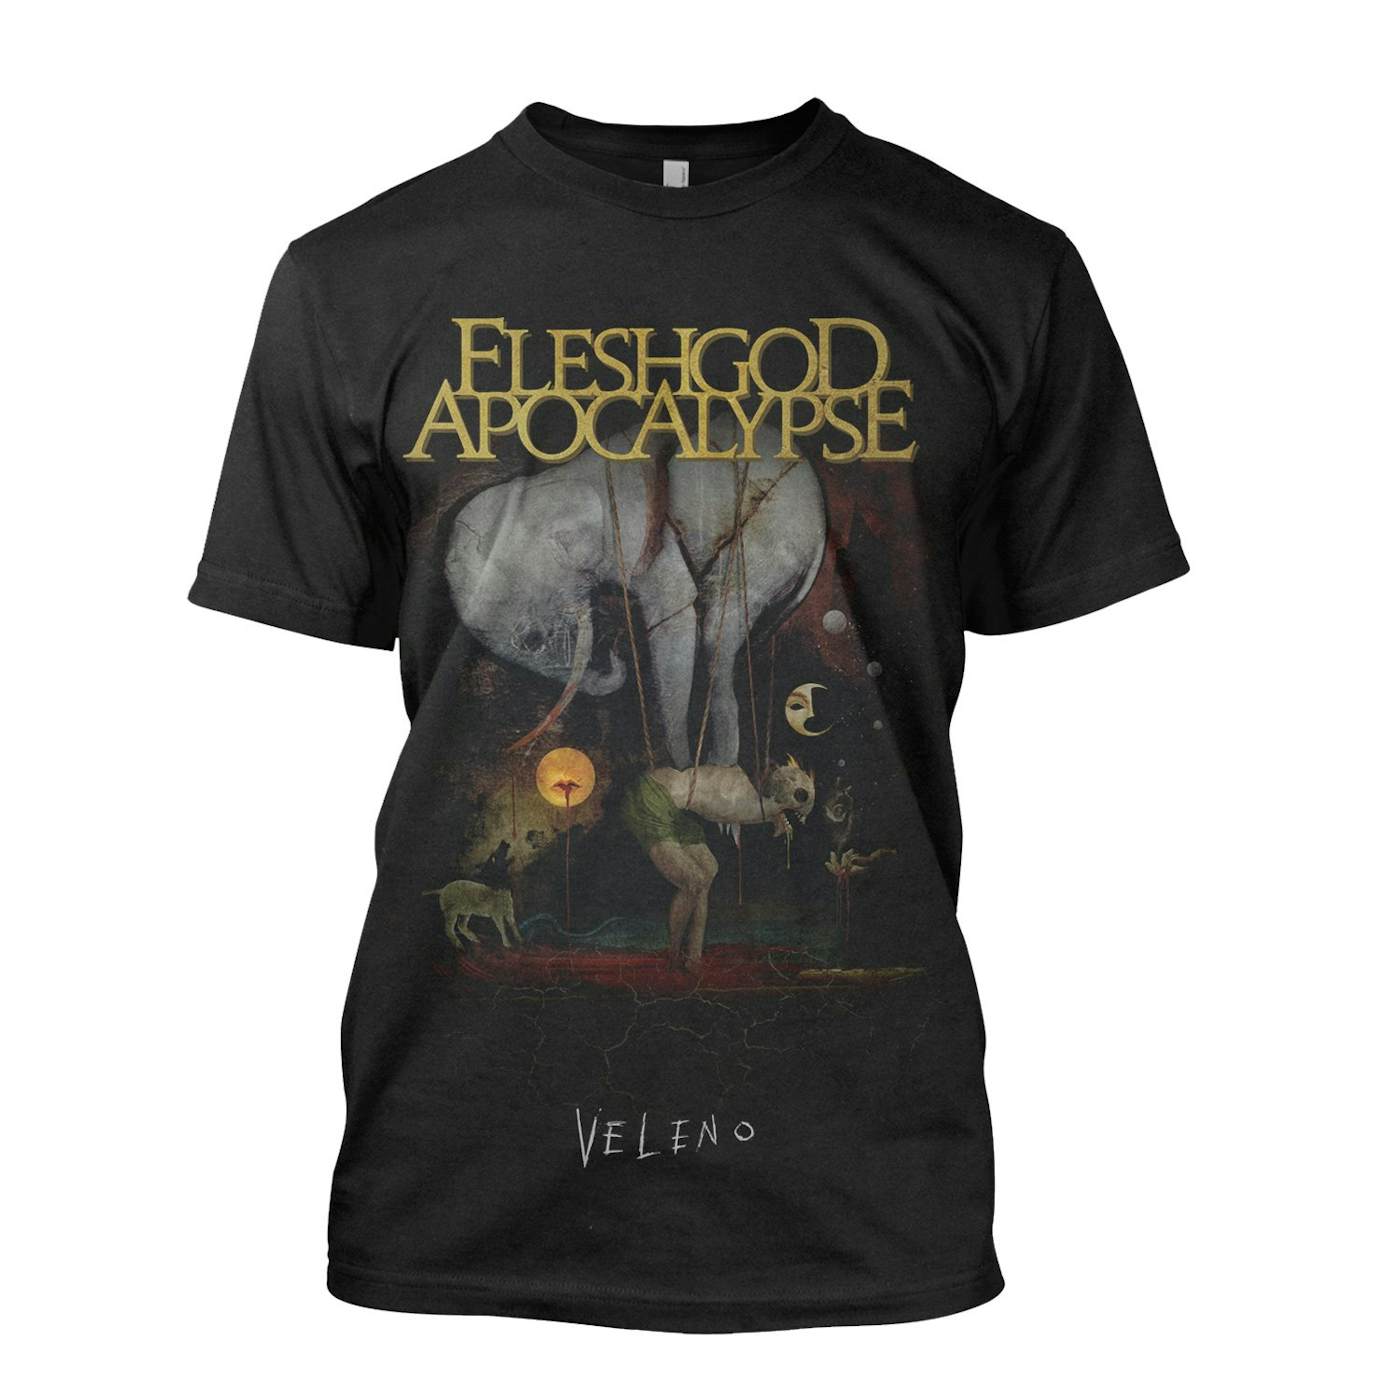 Fleshgod Apocalypse "Veleno" T-Shirt